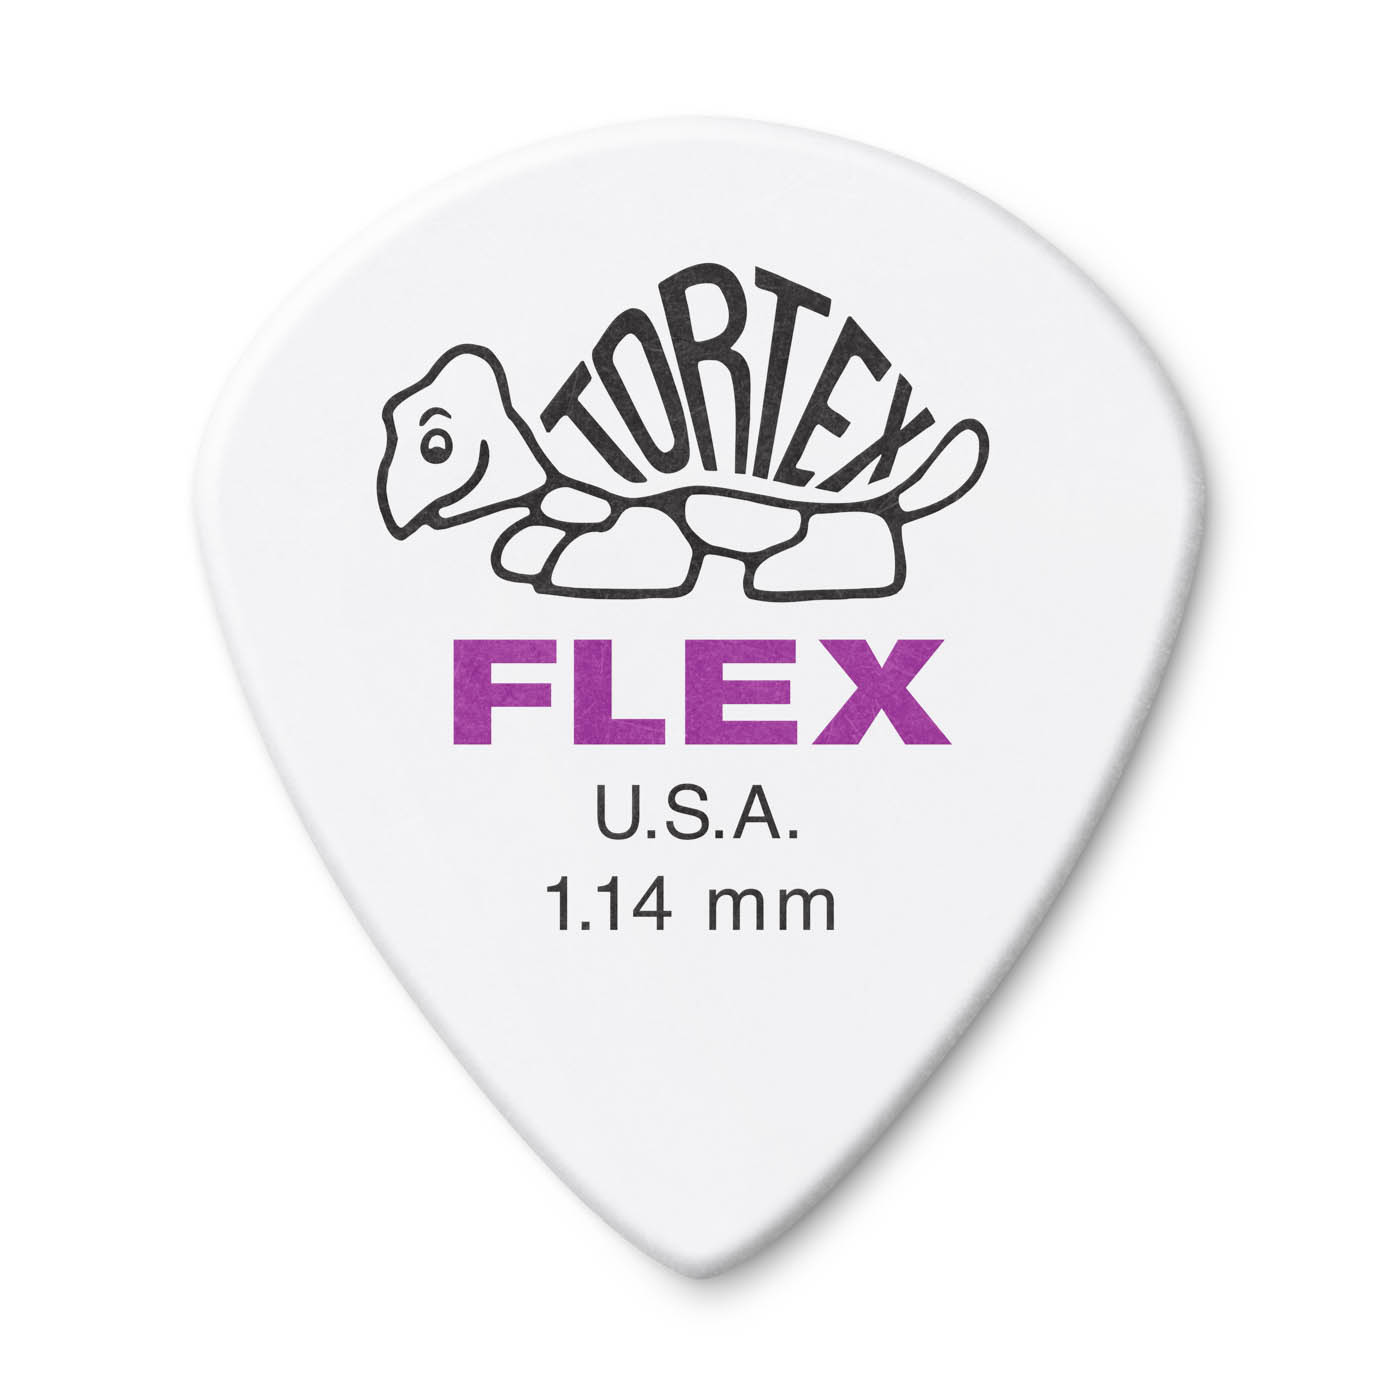 DUNLOP Médiators Tortex Flex Jazz III x 12